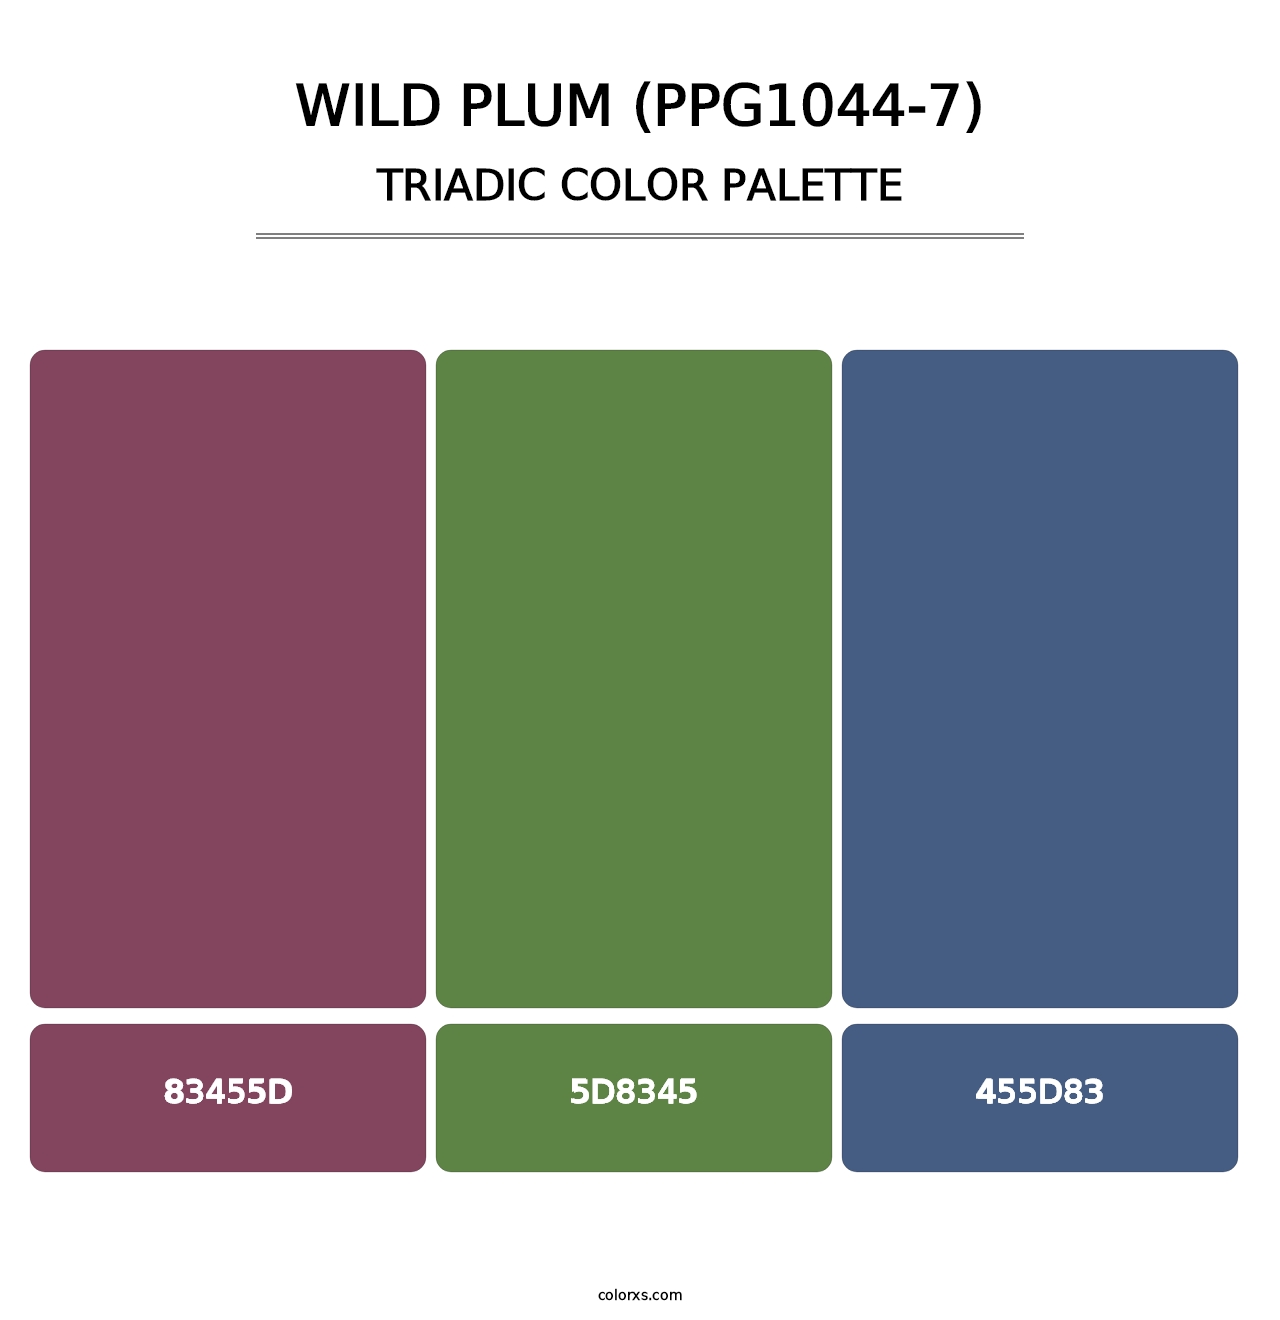 Wild Plum (PPG1044-7) - Triadic Color Palette